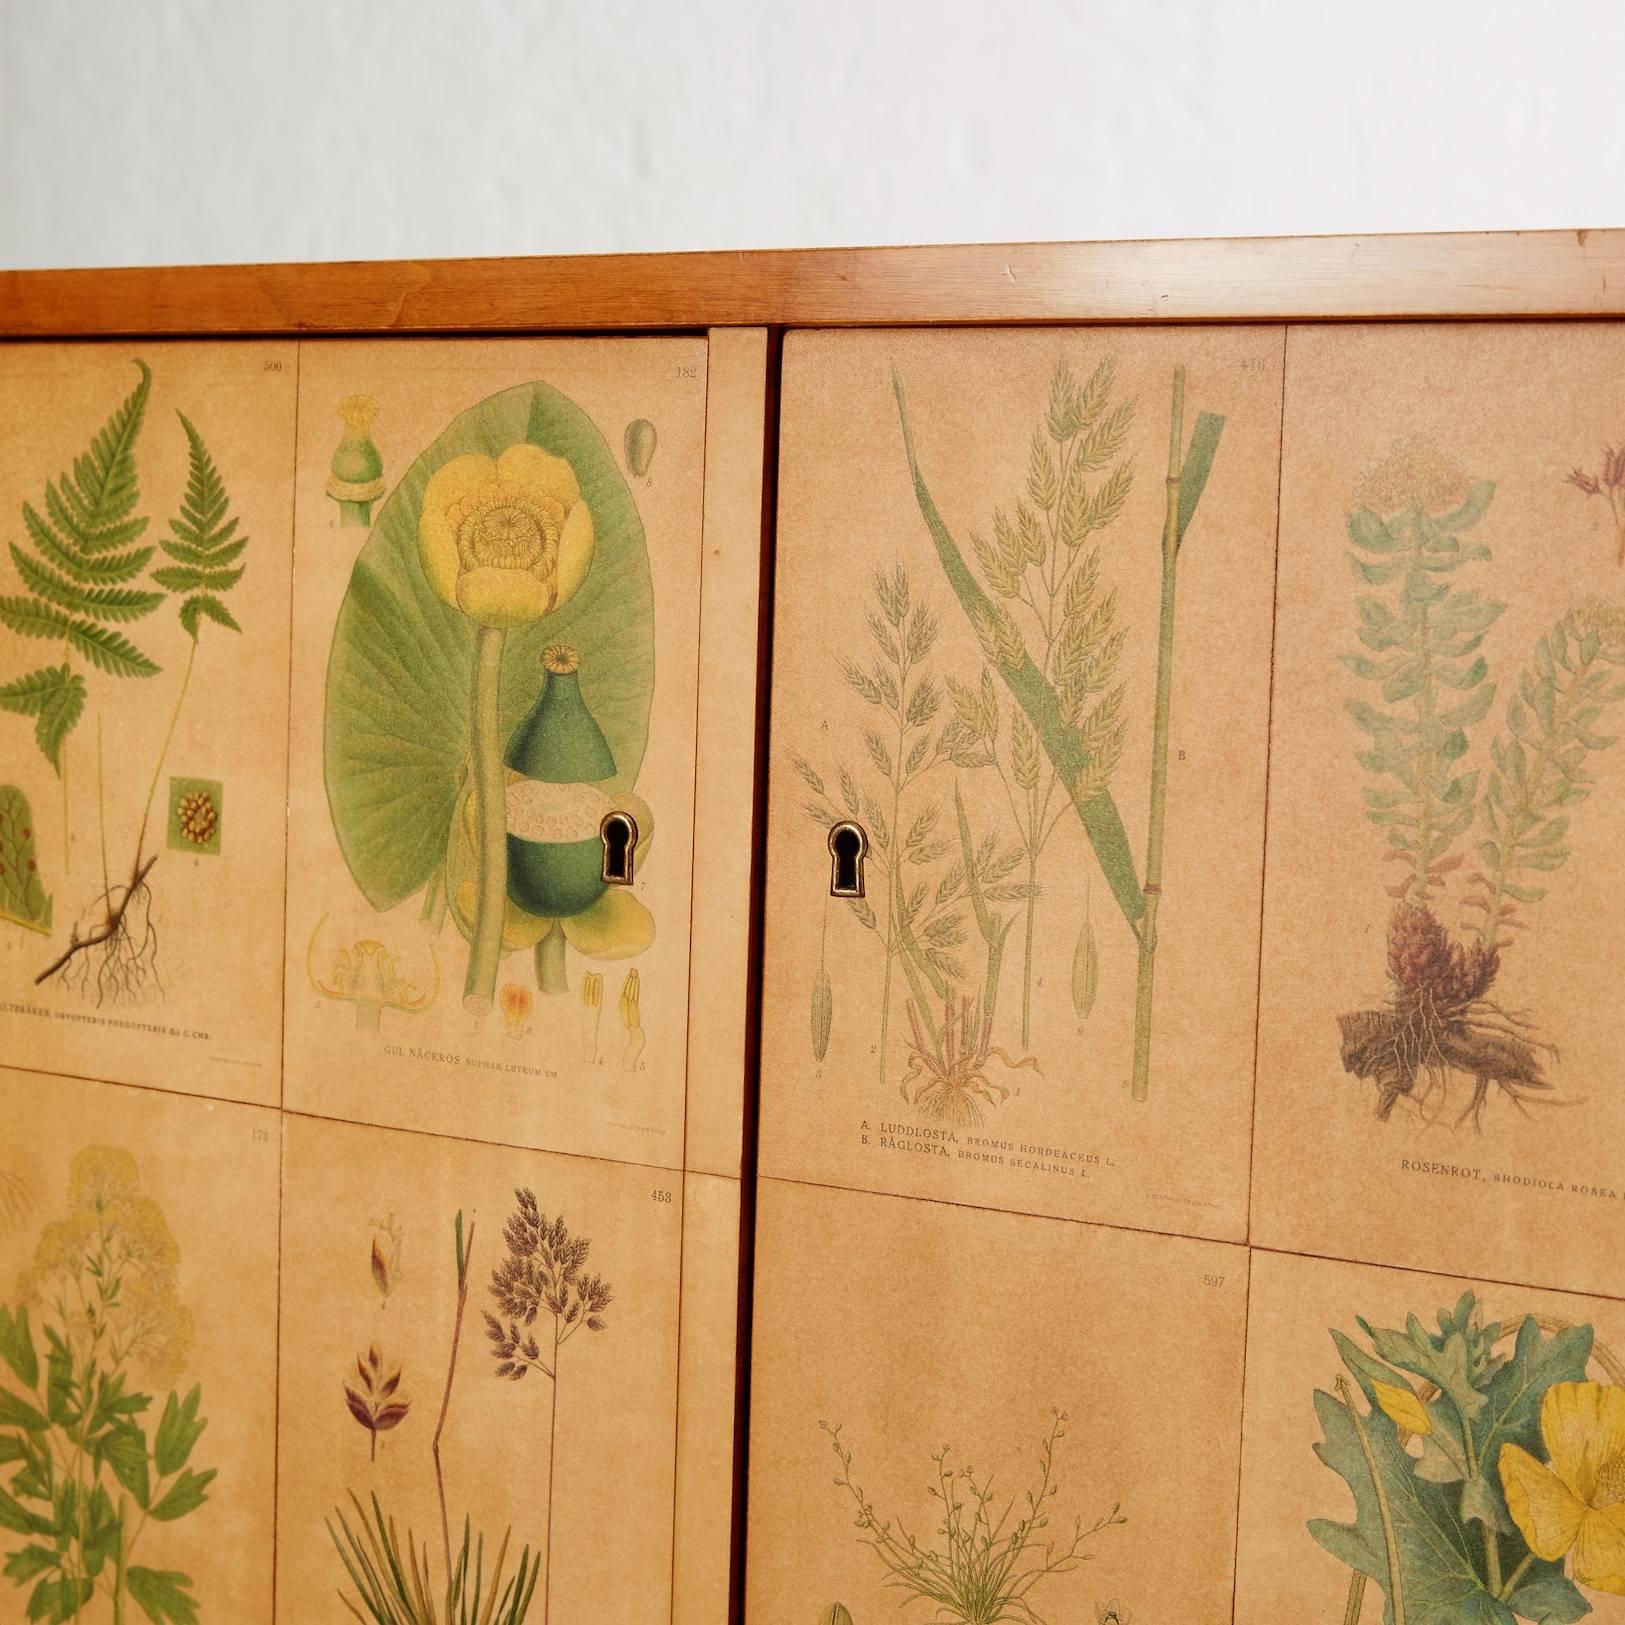 Scandinavian Modern Cabinet with Flora Decor from C.A. Lindman's Nordens Flora